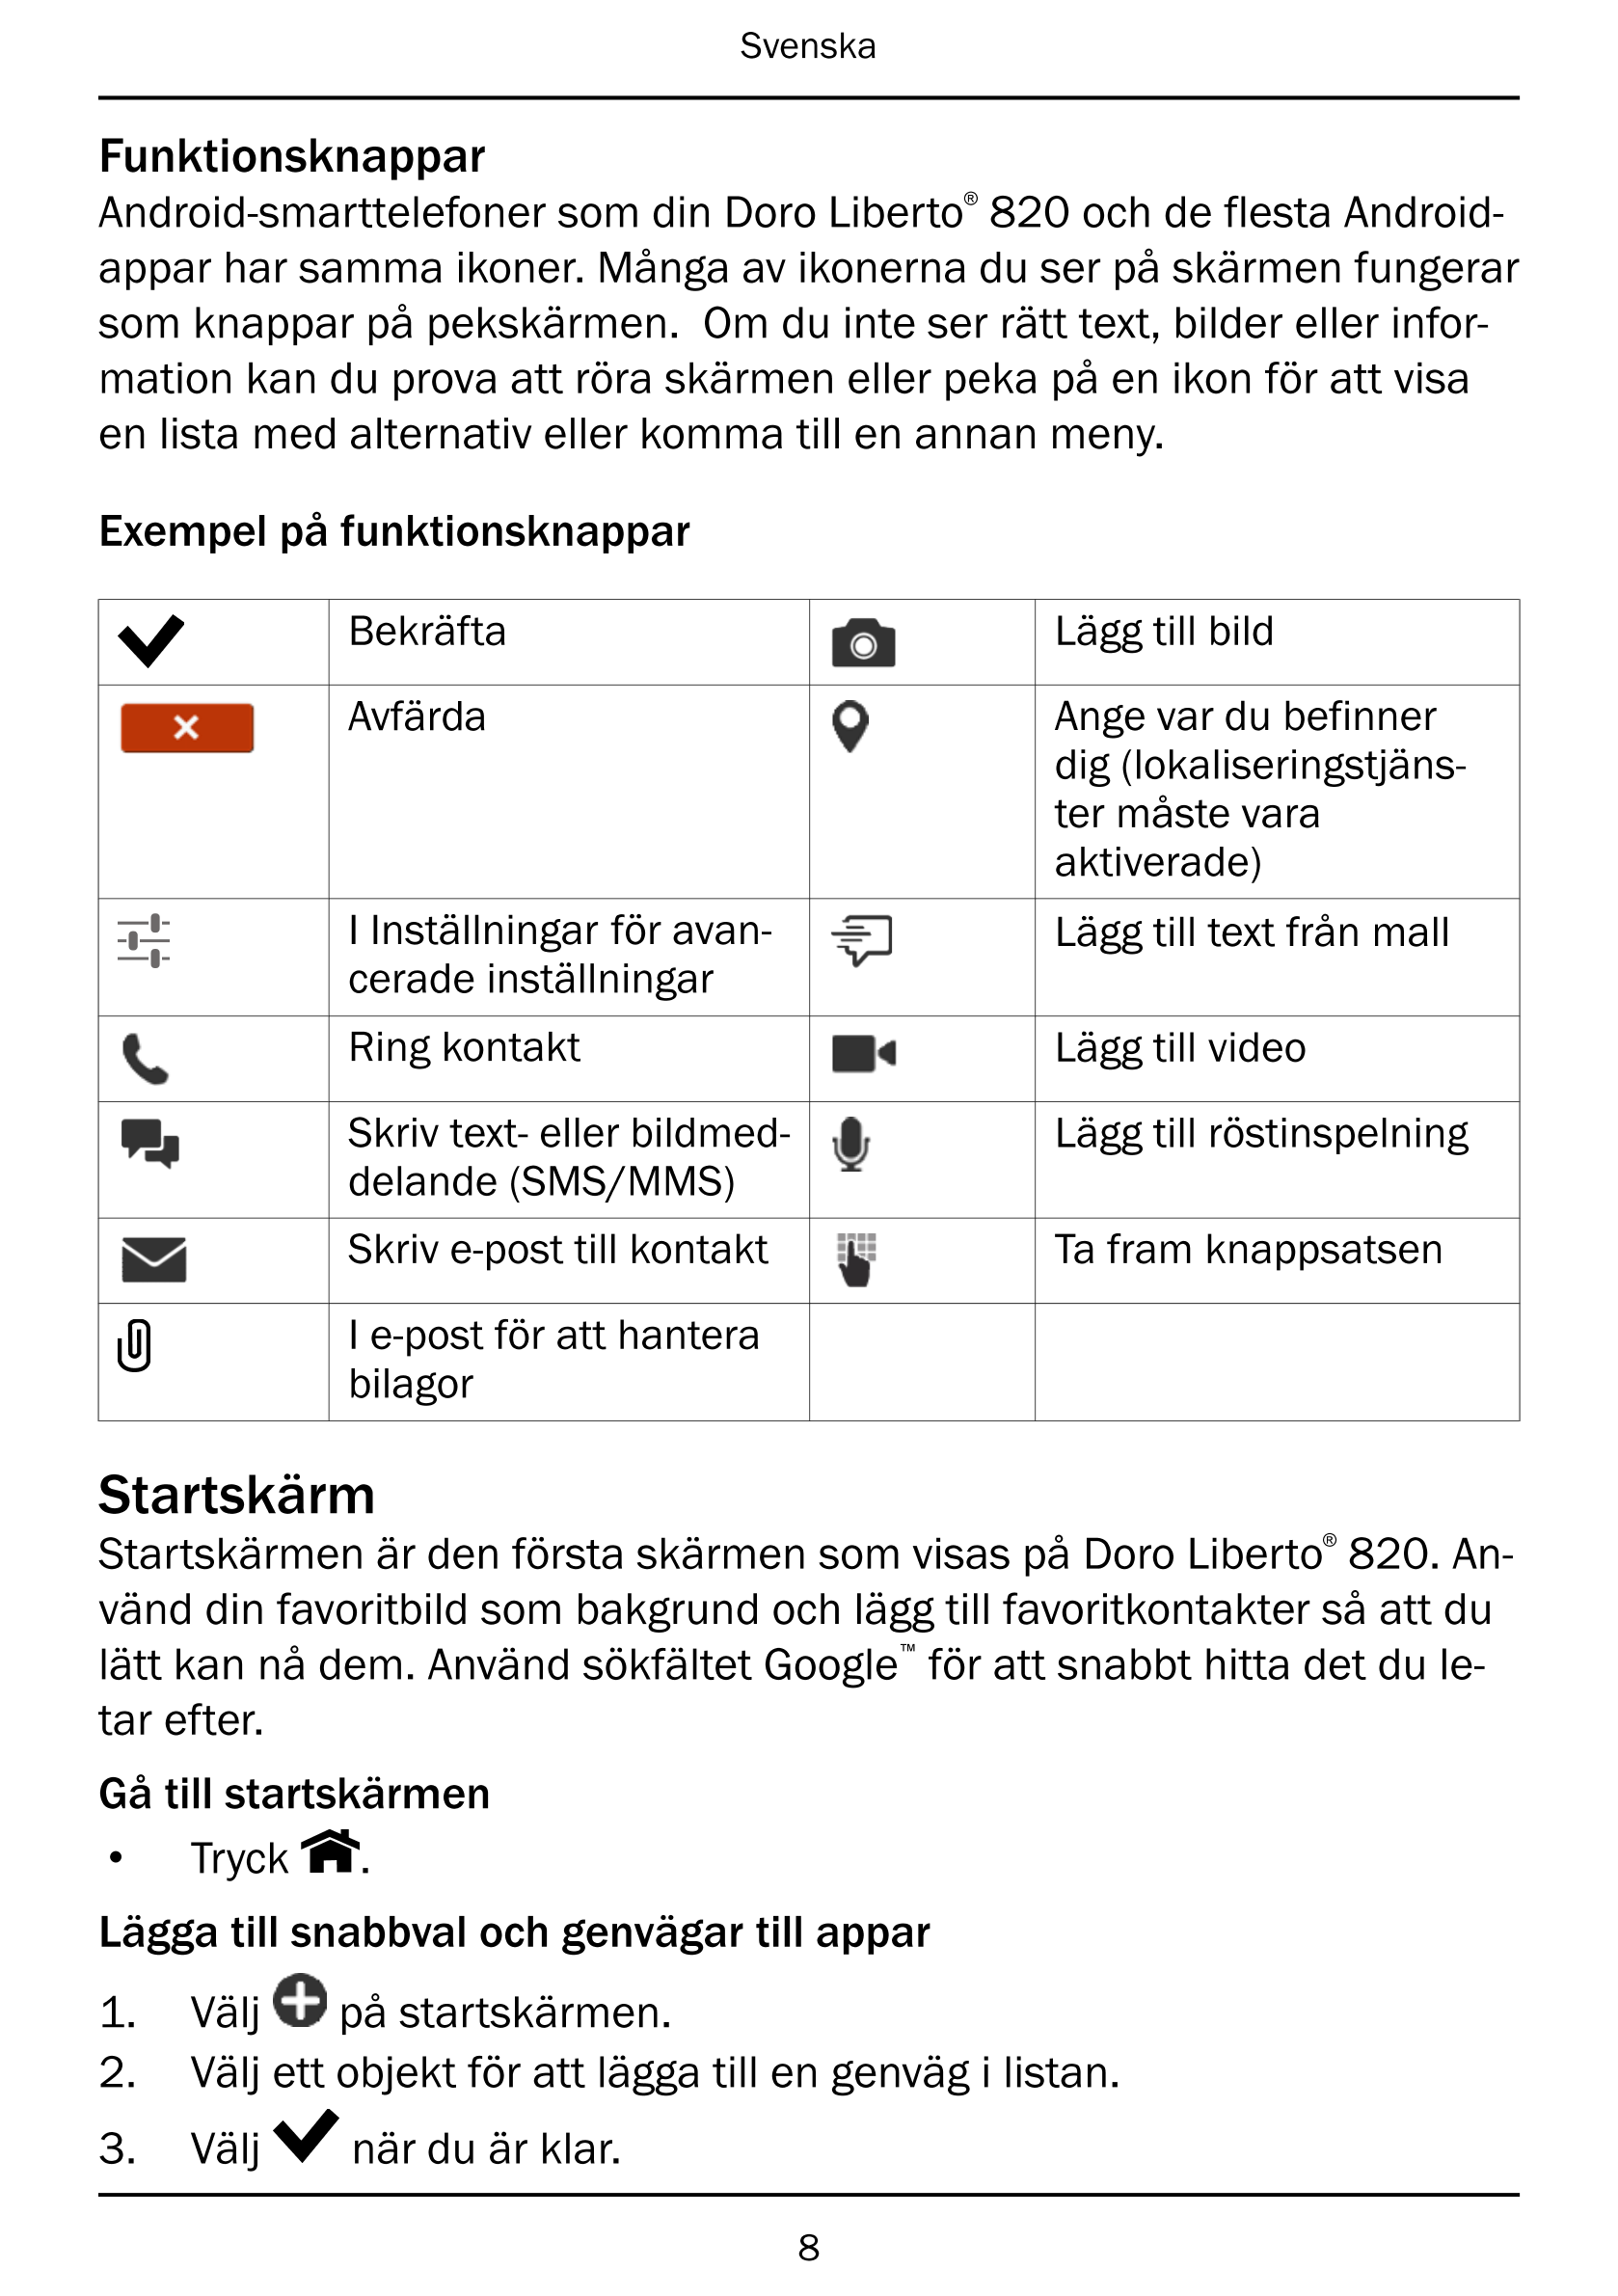 Svenska
Funktionsknappar
Android-smarttelefoner som din Doro Liberto® 820 och de flesta Android-
appar har samma ikoner. Många a